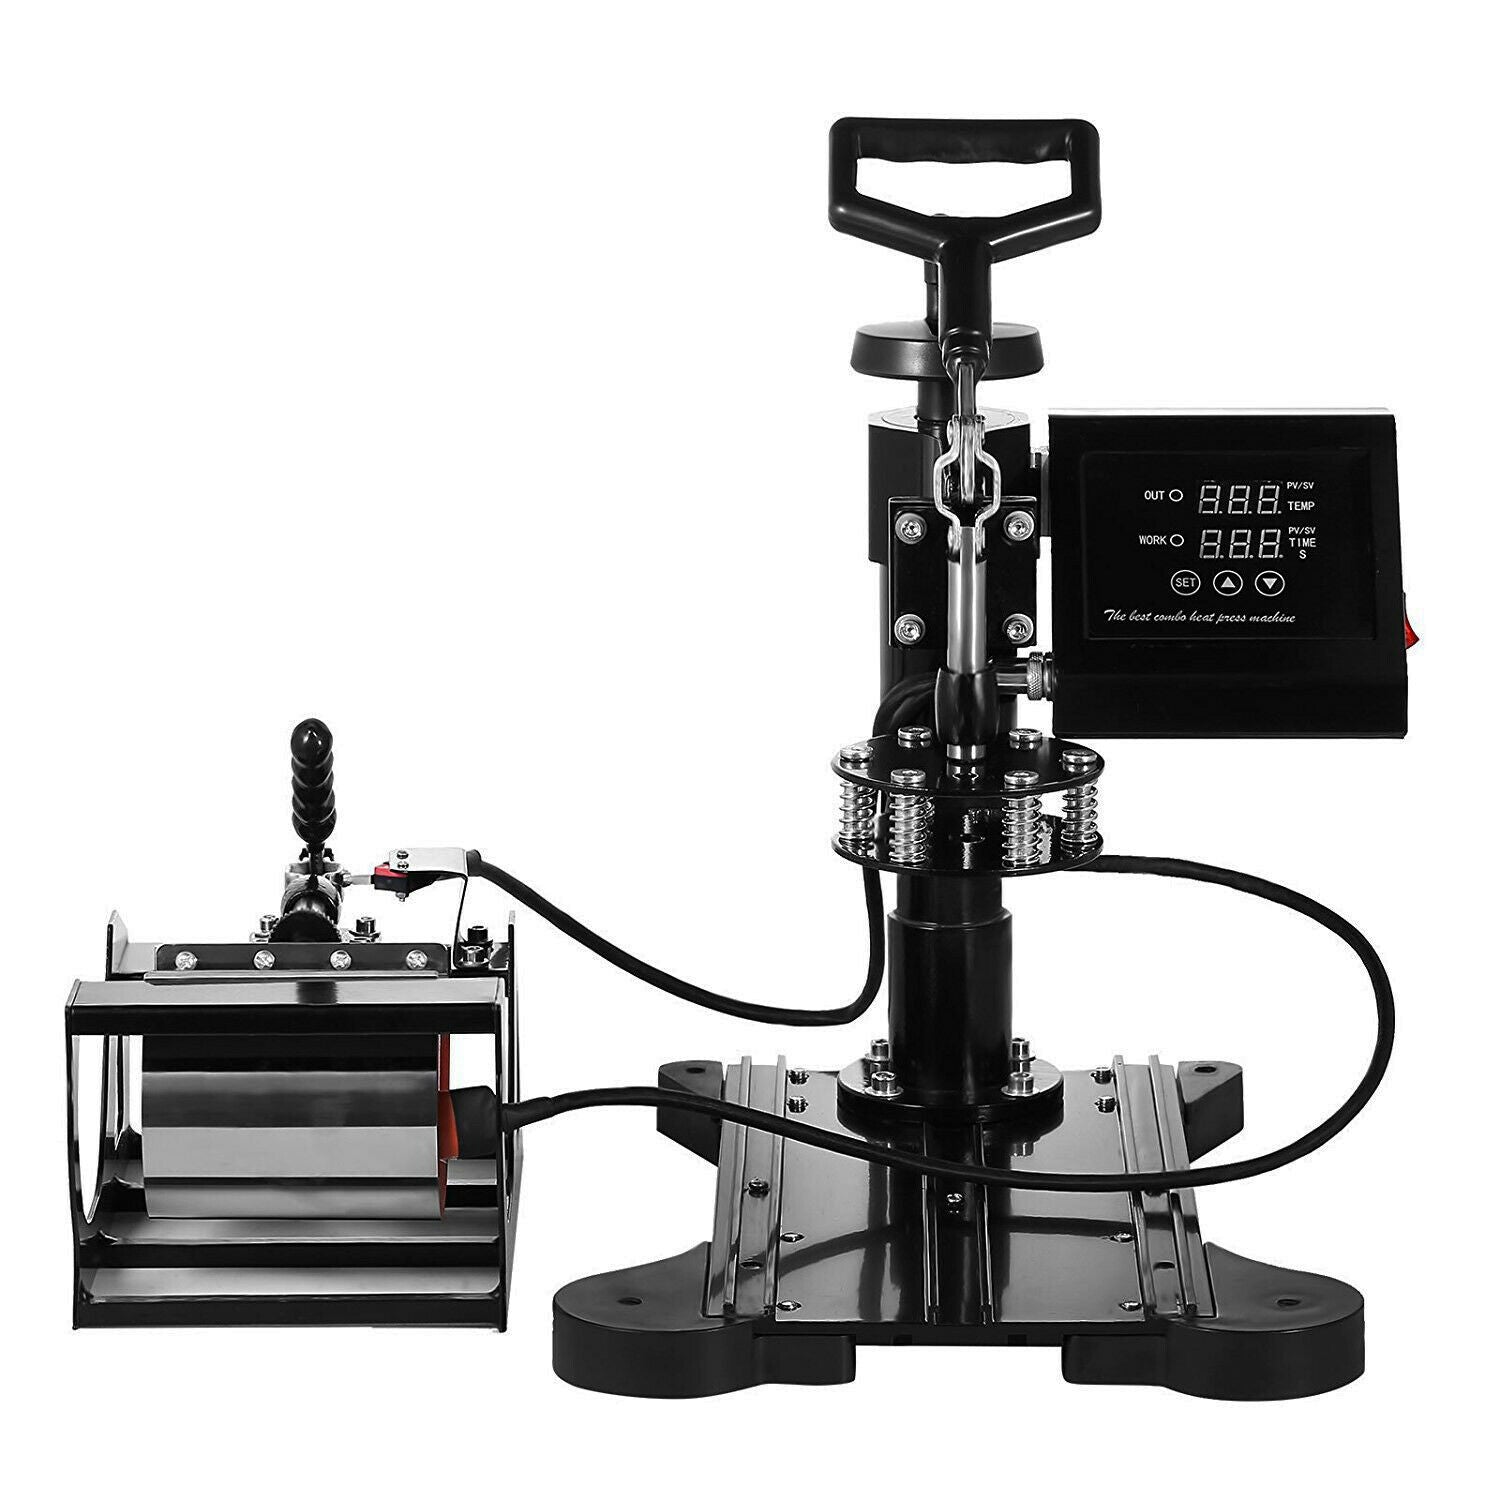 Xinart 7x3.8 Small Heat Press with Display (Temp: 285℉ to 400℉) Mini Heat  Press Machine for T-Shirts, 4 Levels Temp Settings Portable Heat Press